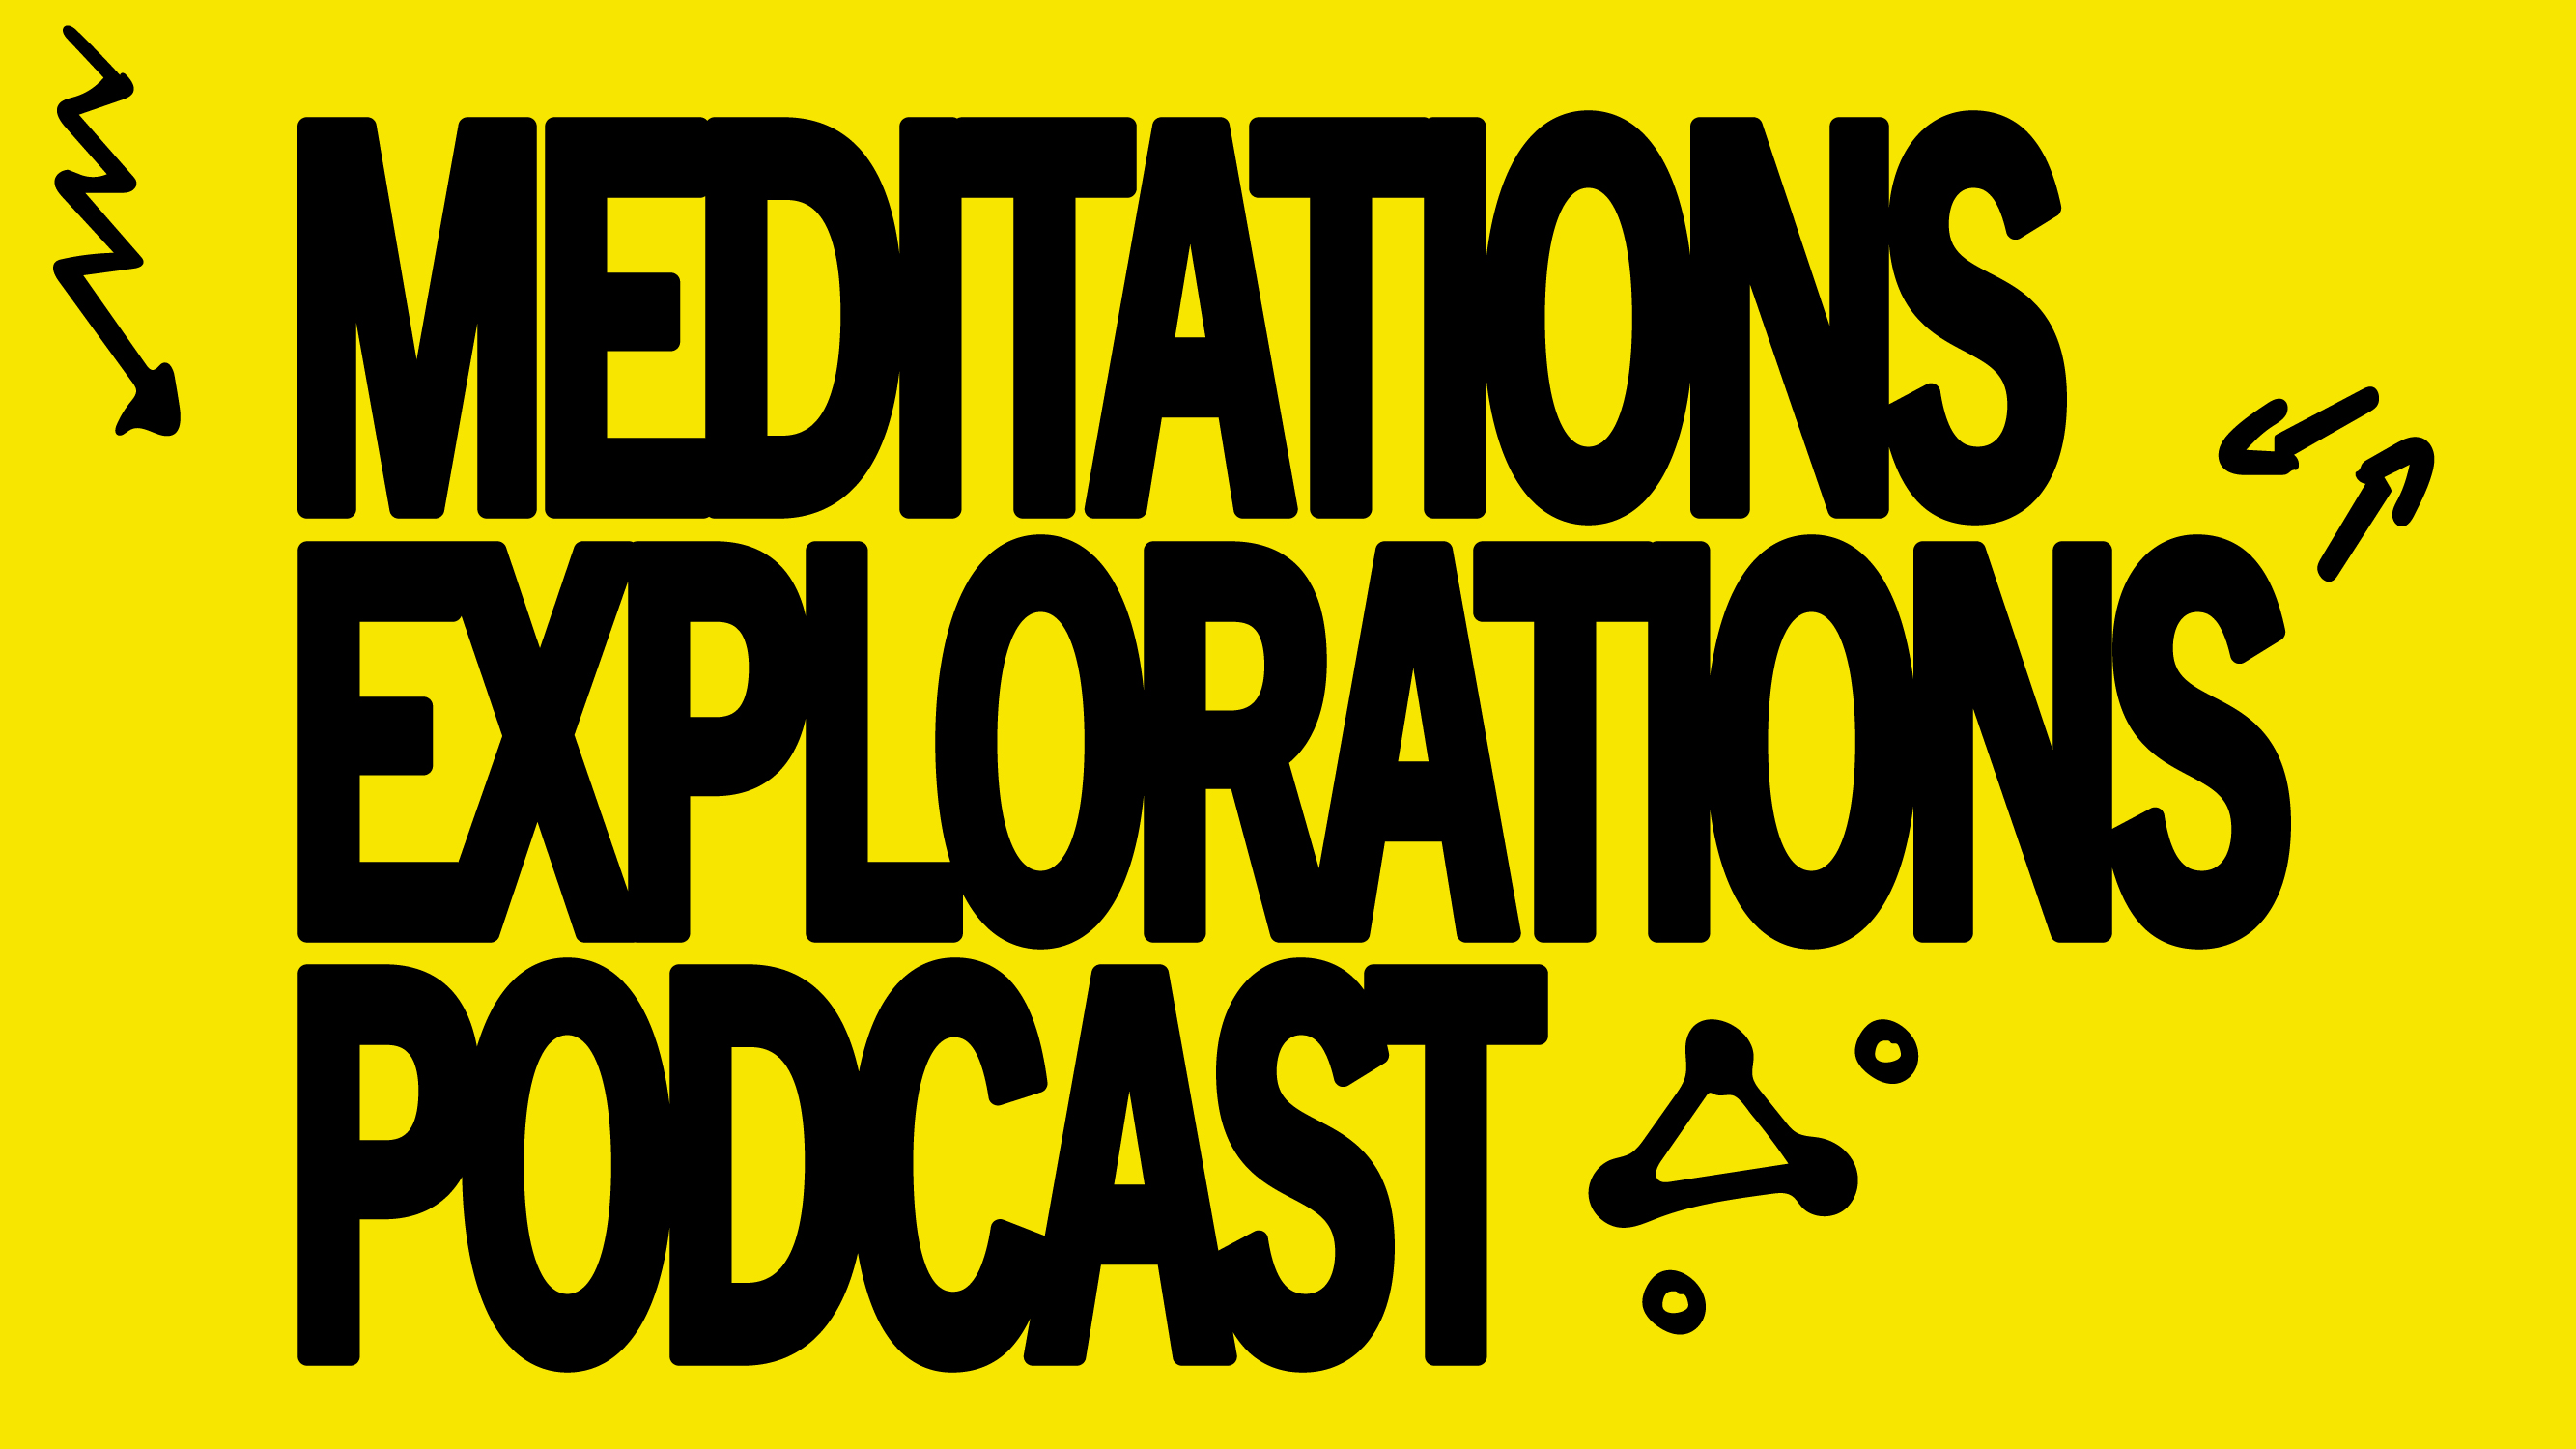 Meditations Explorations Podcast